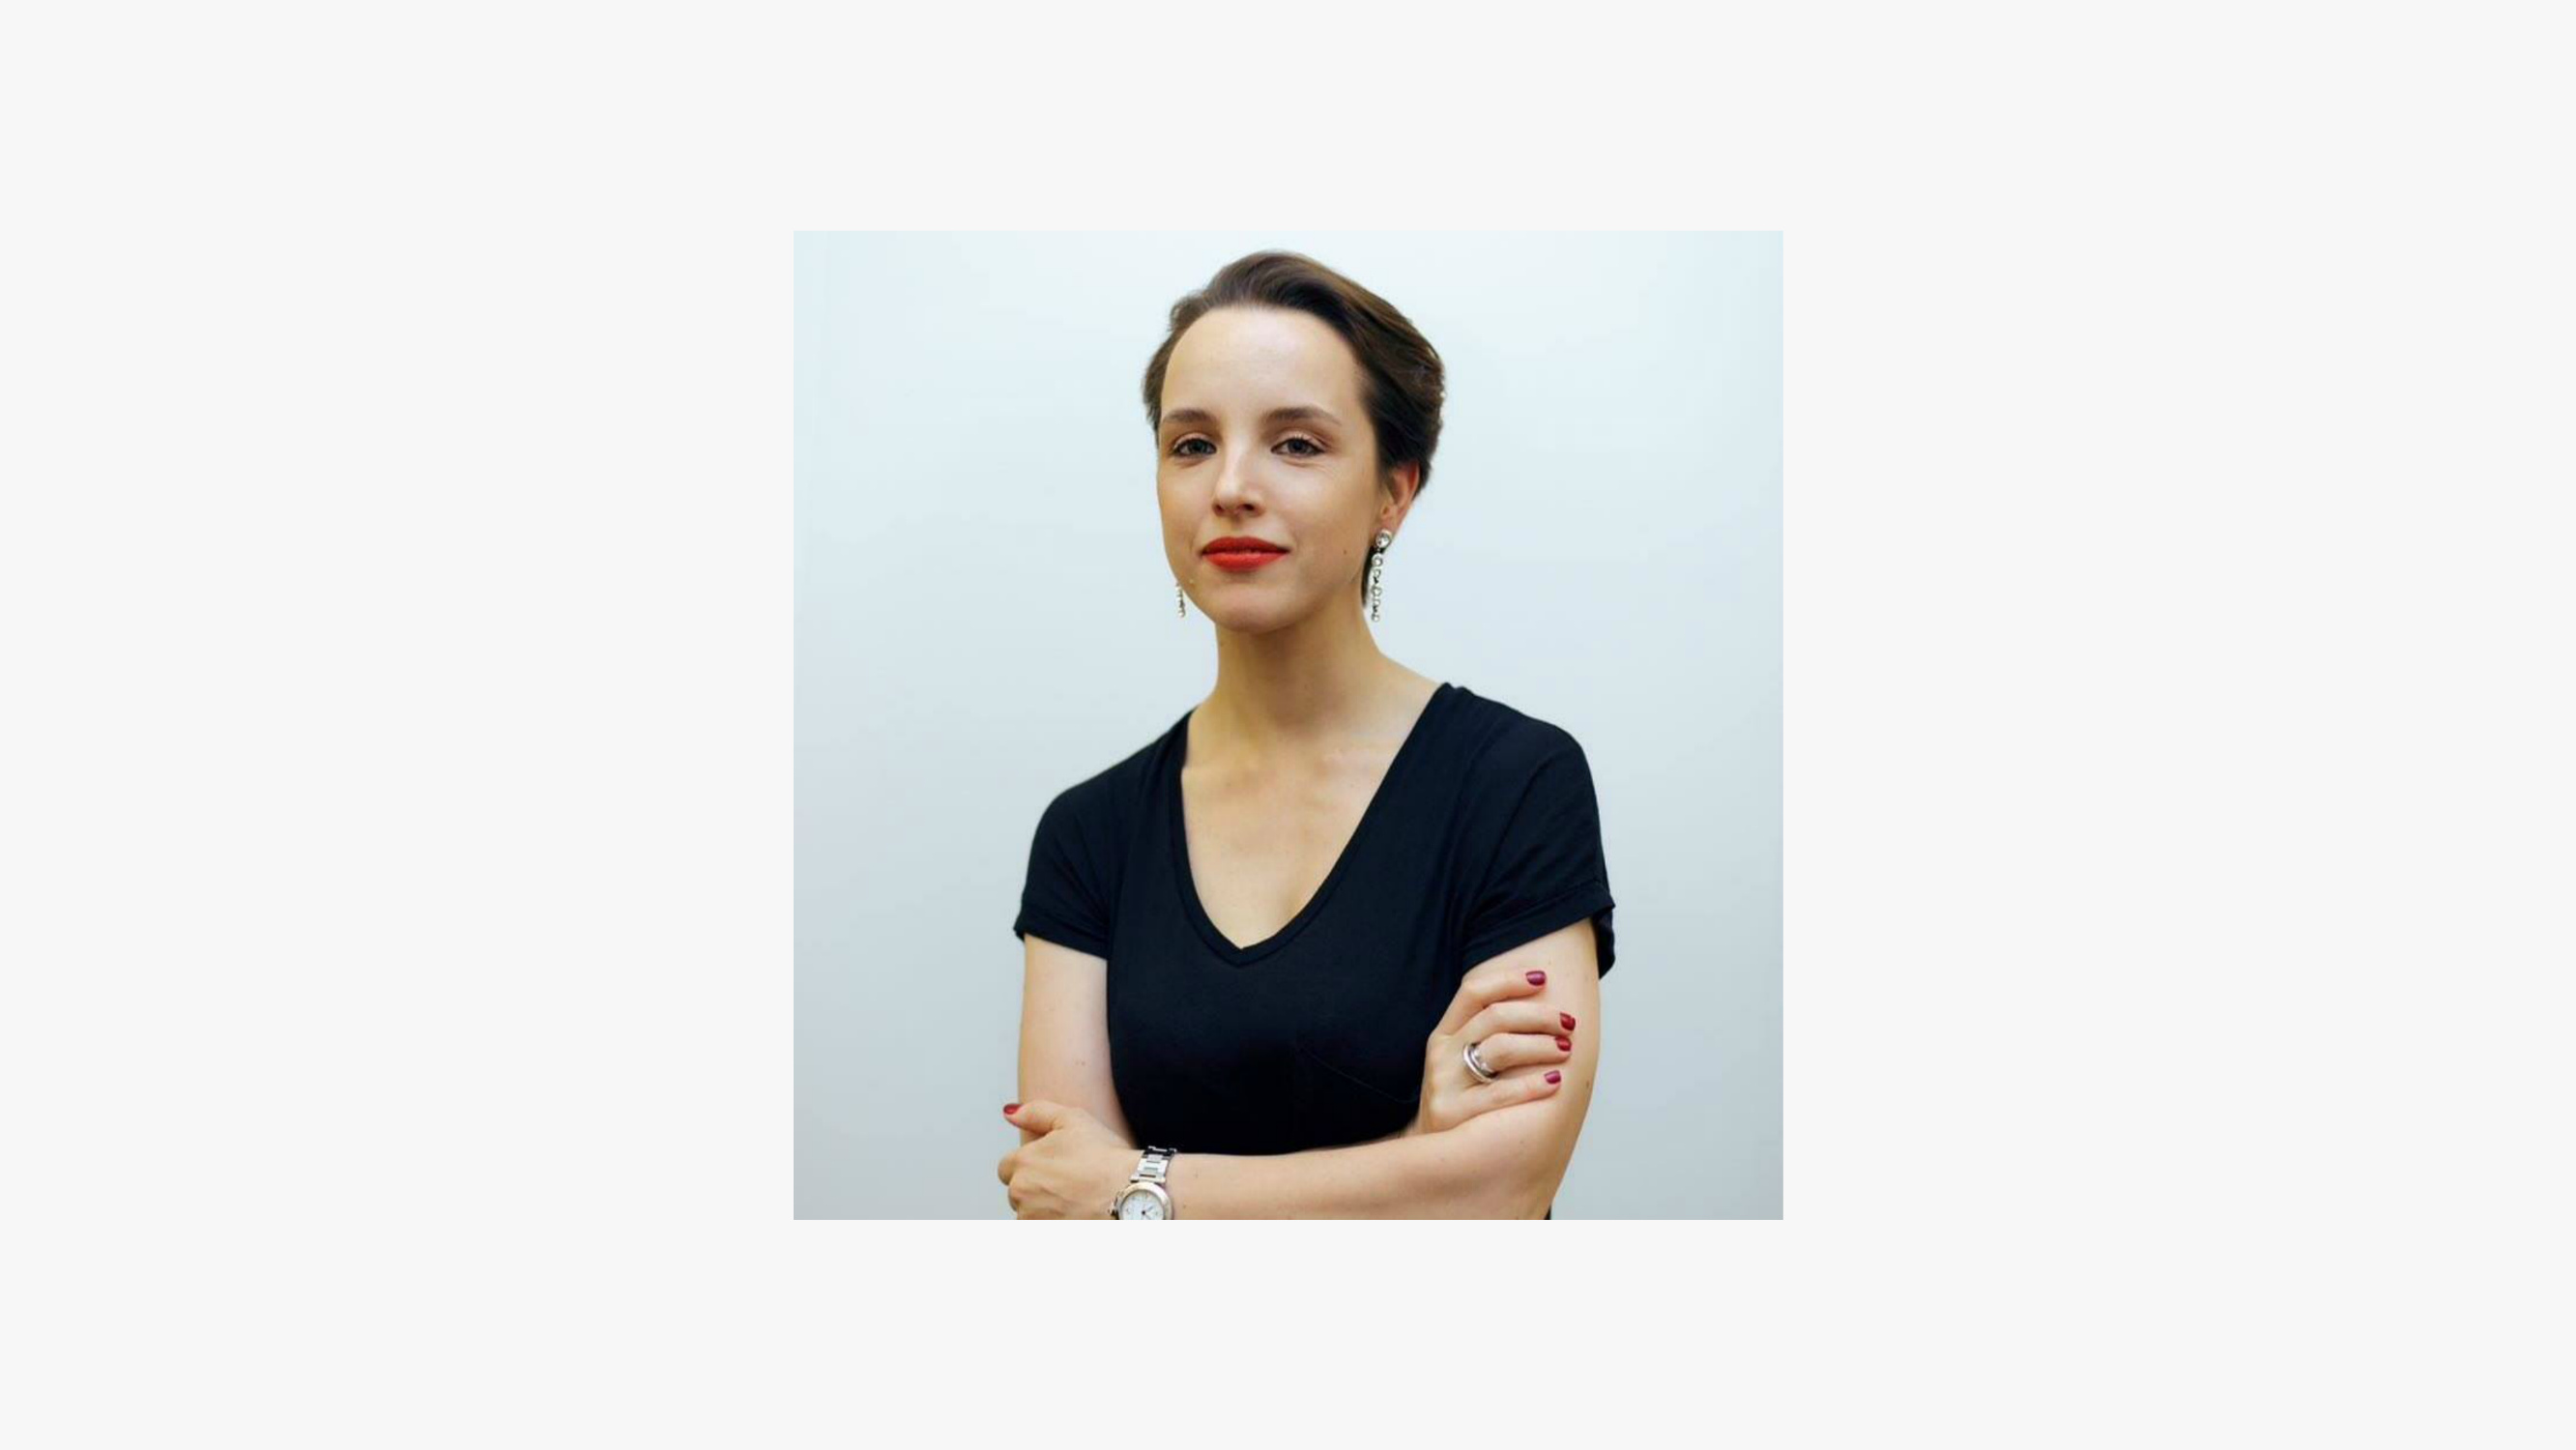 Специалистка по коммуникациям Анастасия Ландер запускает онлайн-курс о деловой переписке